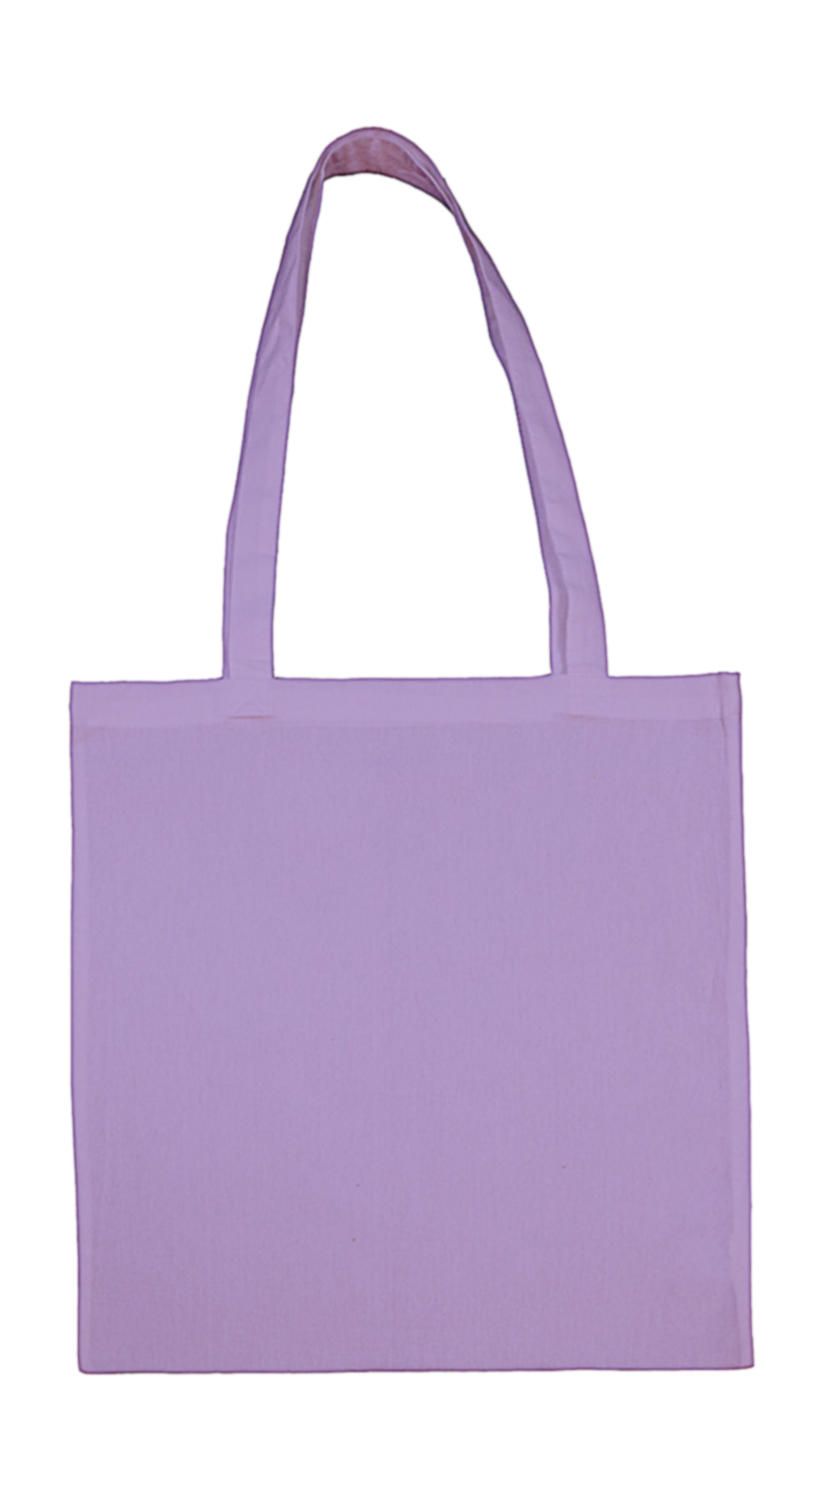  Cotton Bag LH in Farbe Lavender